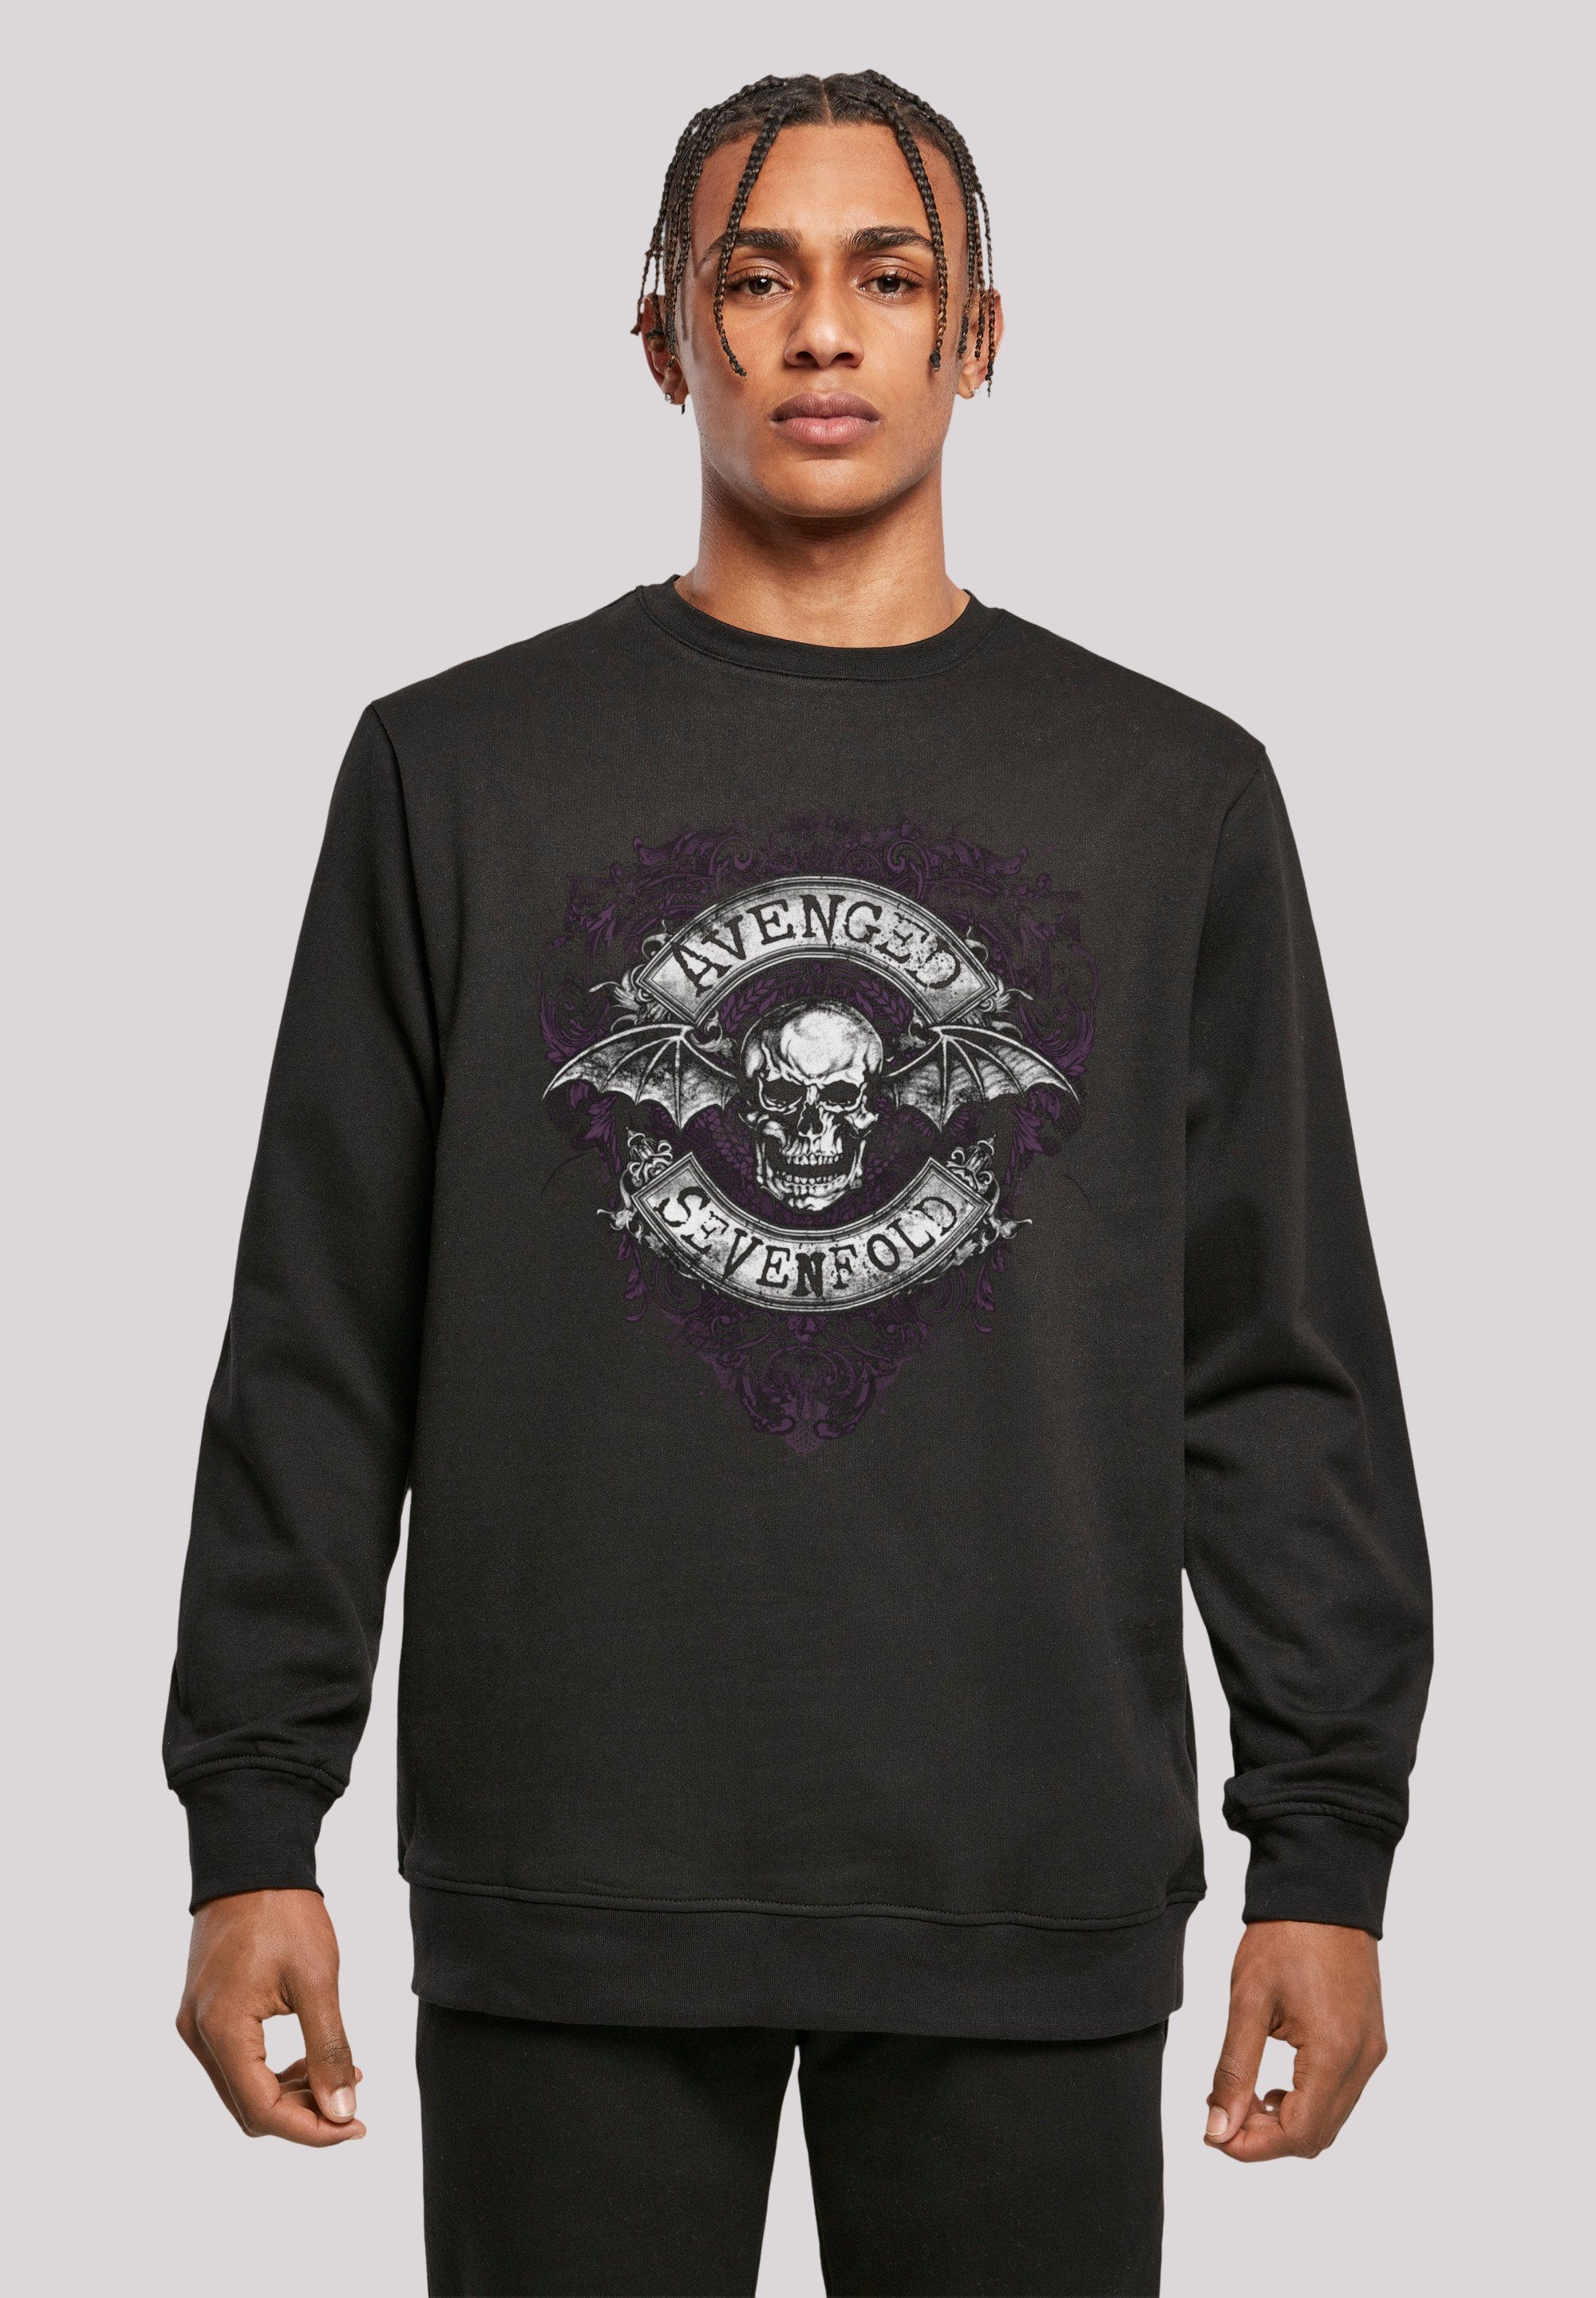 F4NT4STIC Sweatshirt entspanntem Sevenfold Premium Metal Rock-Musik, Tragekomfort Avenged Flourish Band Bequemer Qualität, Schnitt Band, mit Bat Rock